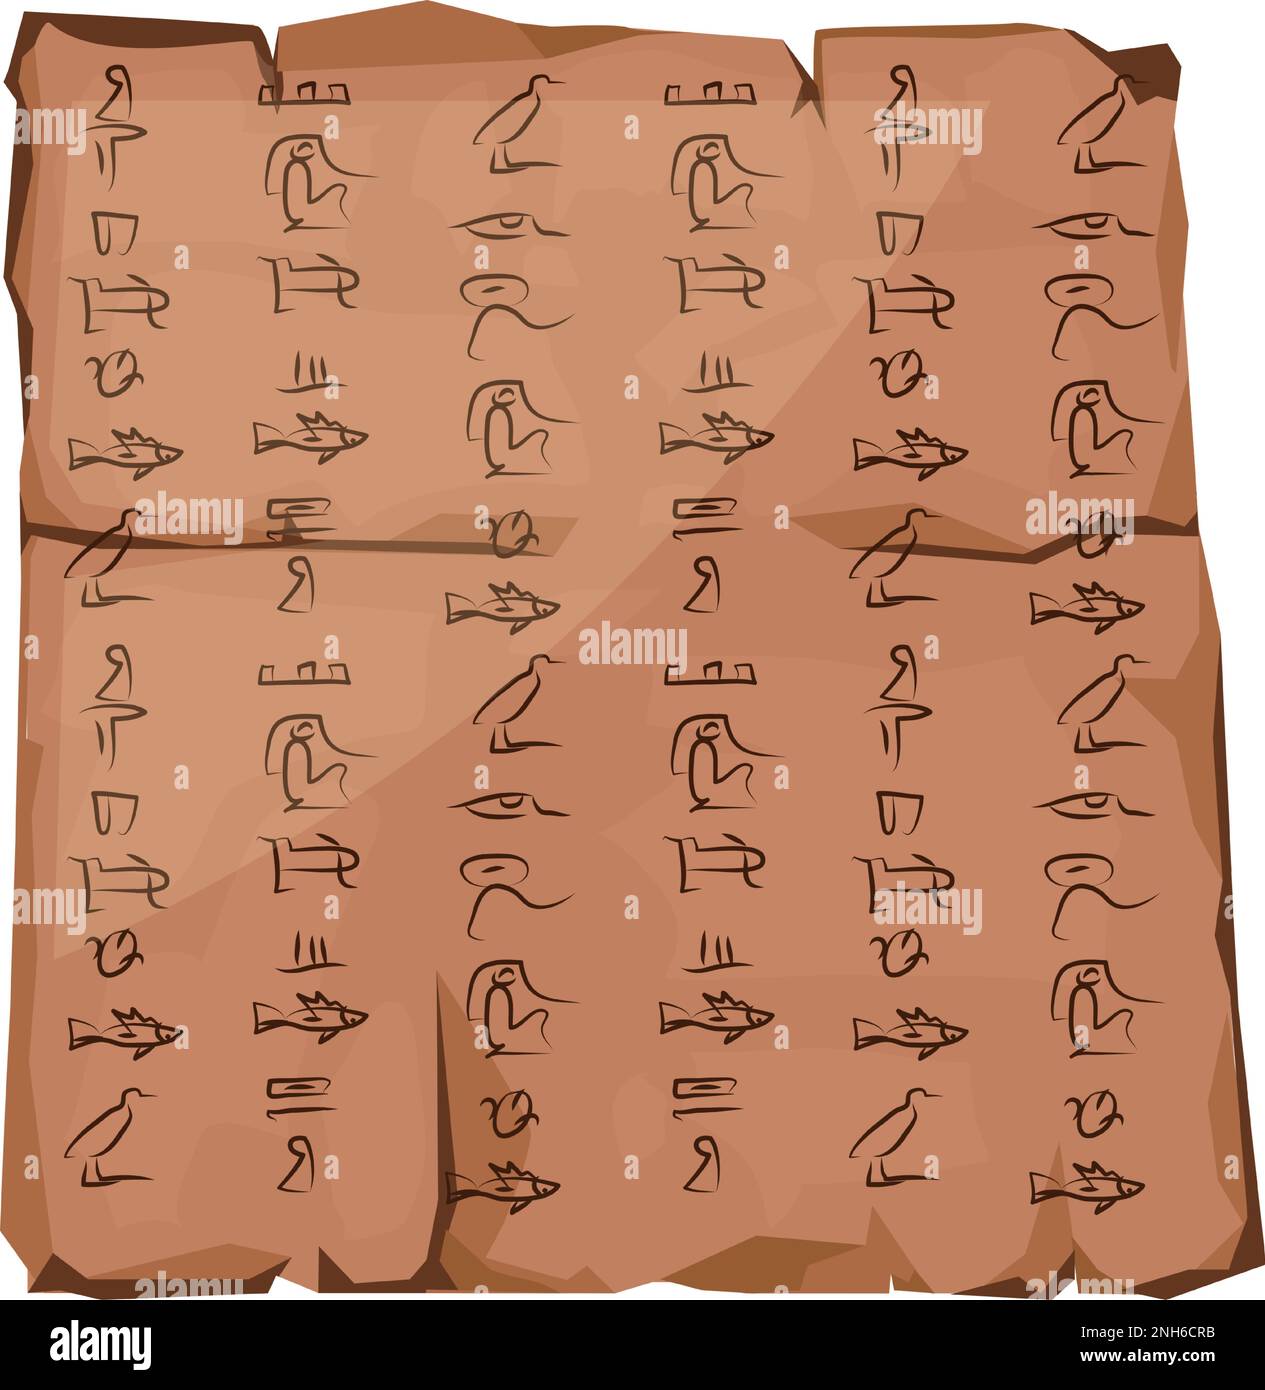 Alte ägyptische Papyrus-Teil-Cartoon-Vektordarstellung. Antikes Papier mit Hieroglyphen, religiösen Symbolen der ägyptischen Kultur, Einrichtung zum Speichern von Informationen, isoliert auf weißem Hintergrund Stock Vektor